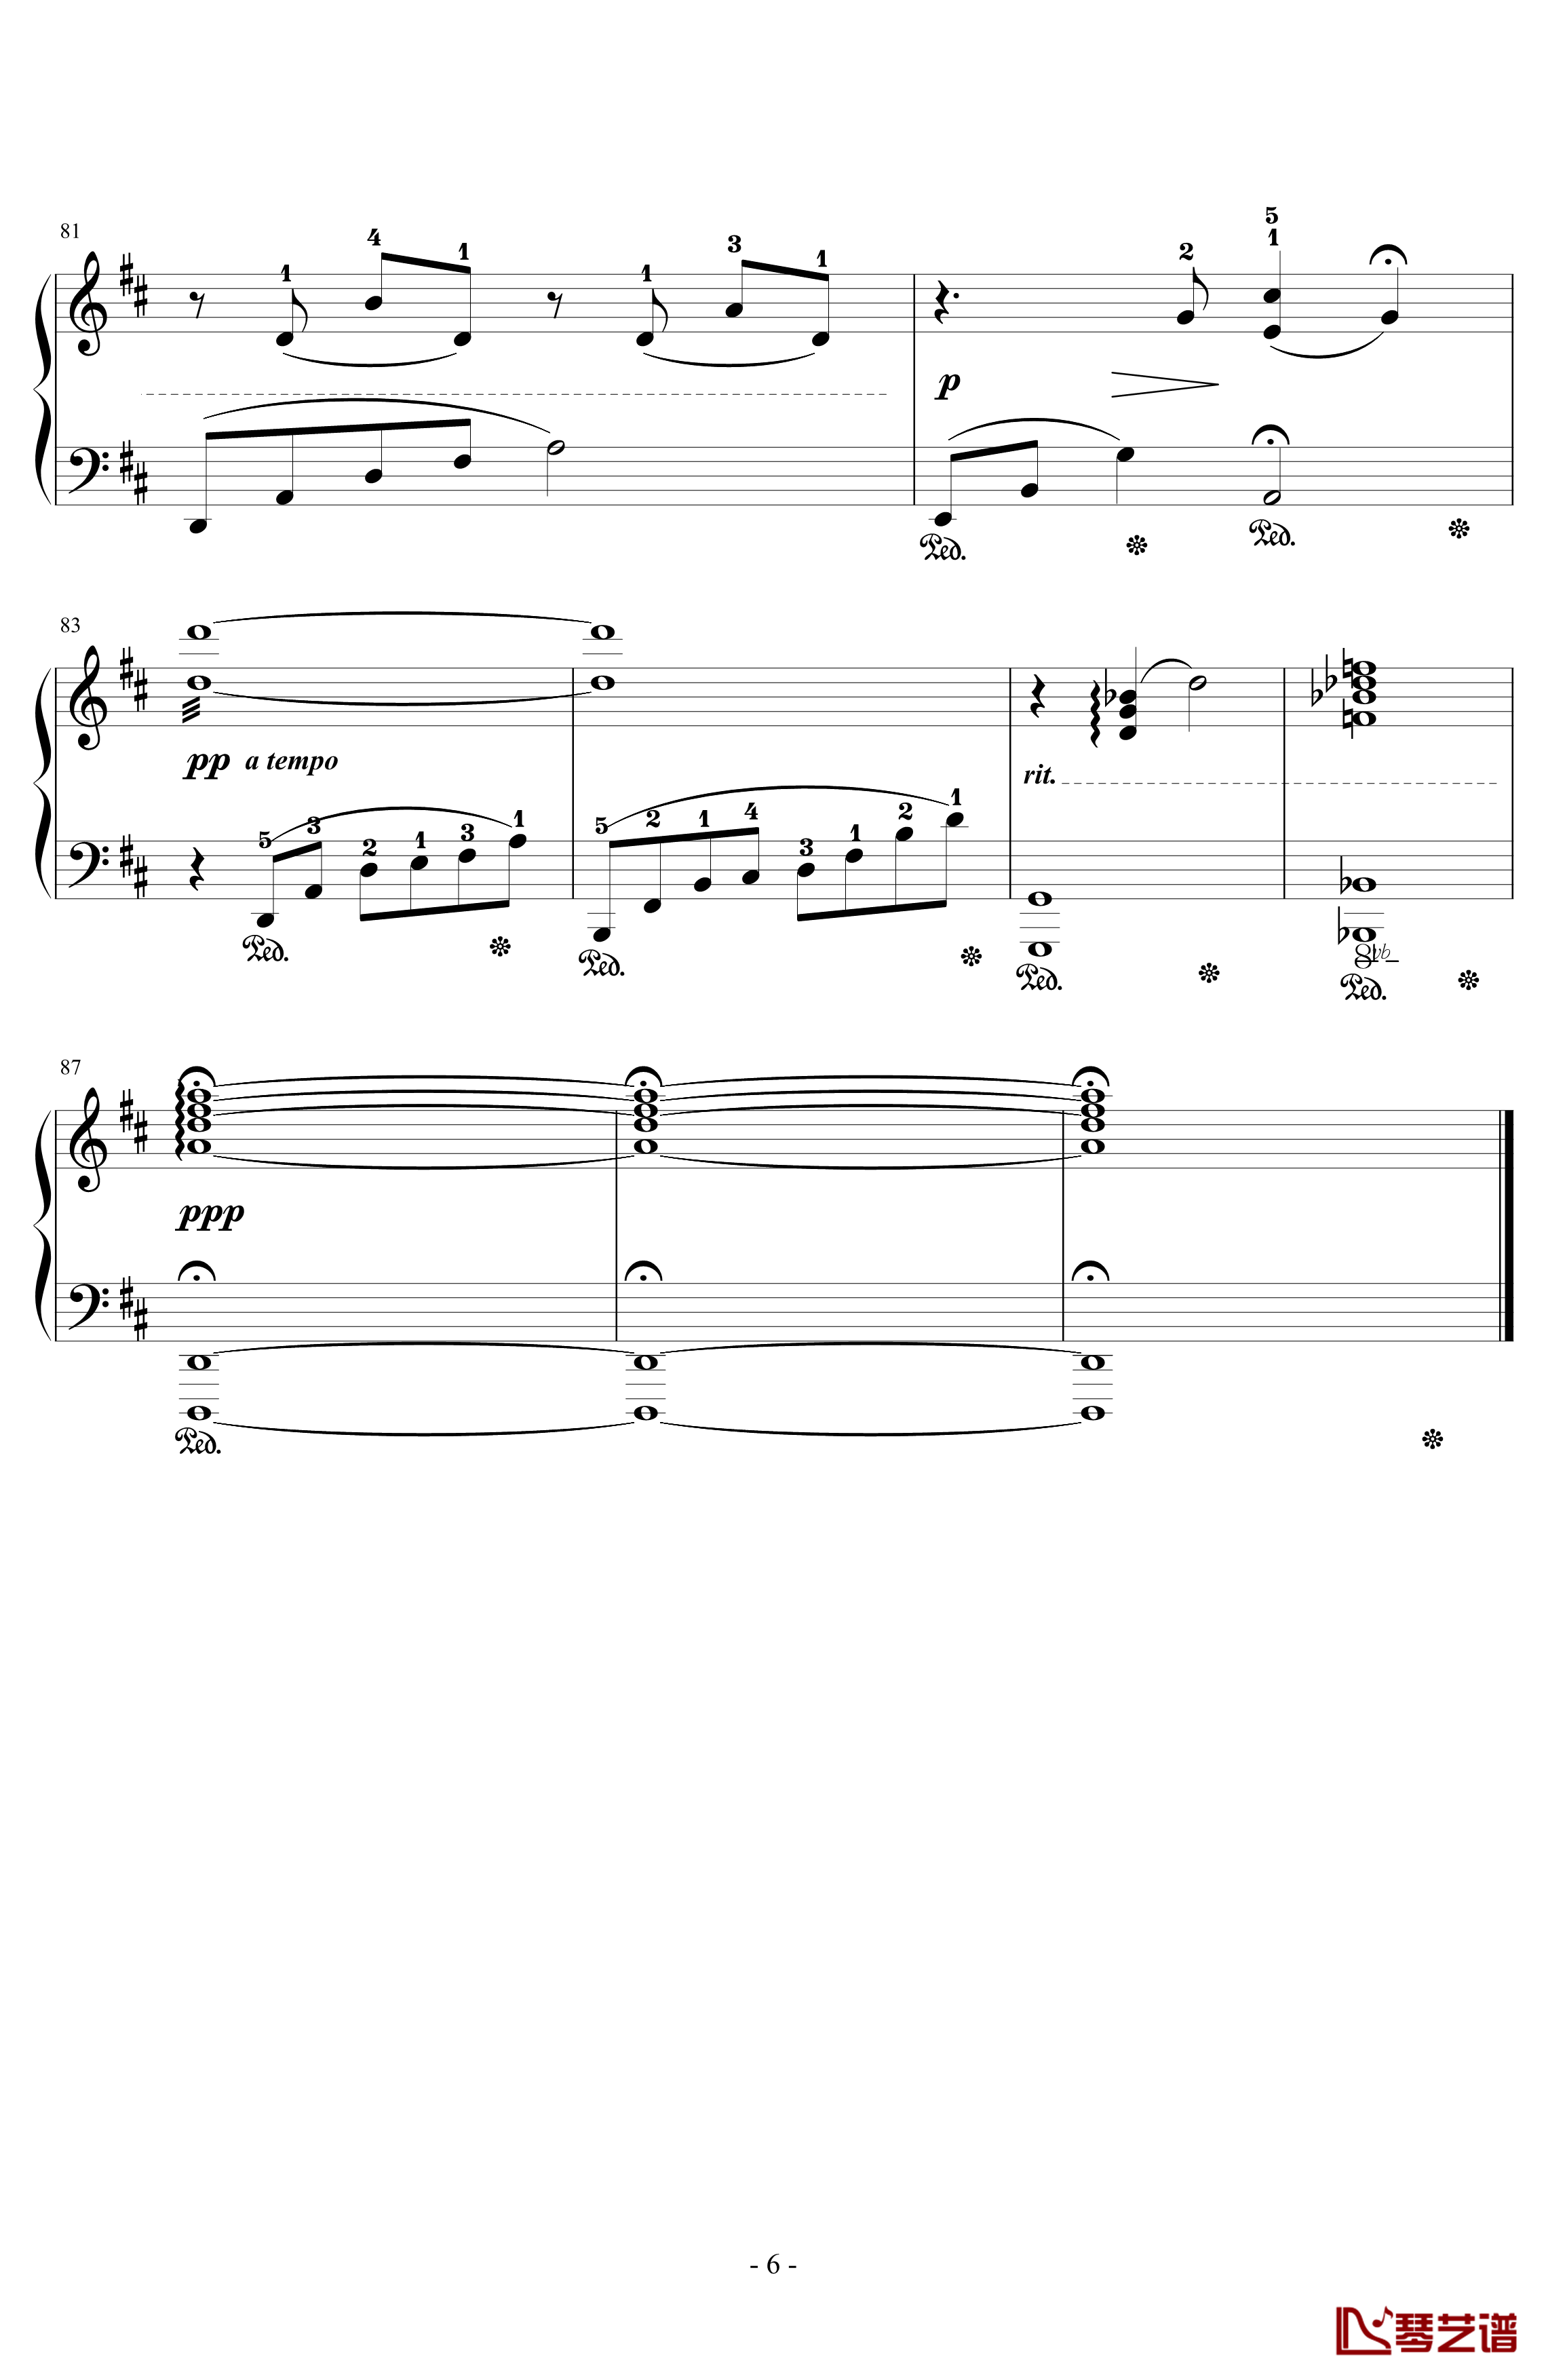 とどかぬ想い钢琴谱-from FF9 Orchestra Version-植松伸夫6